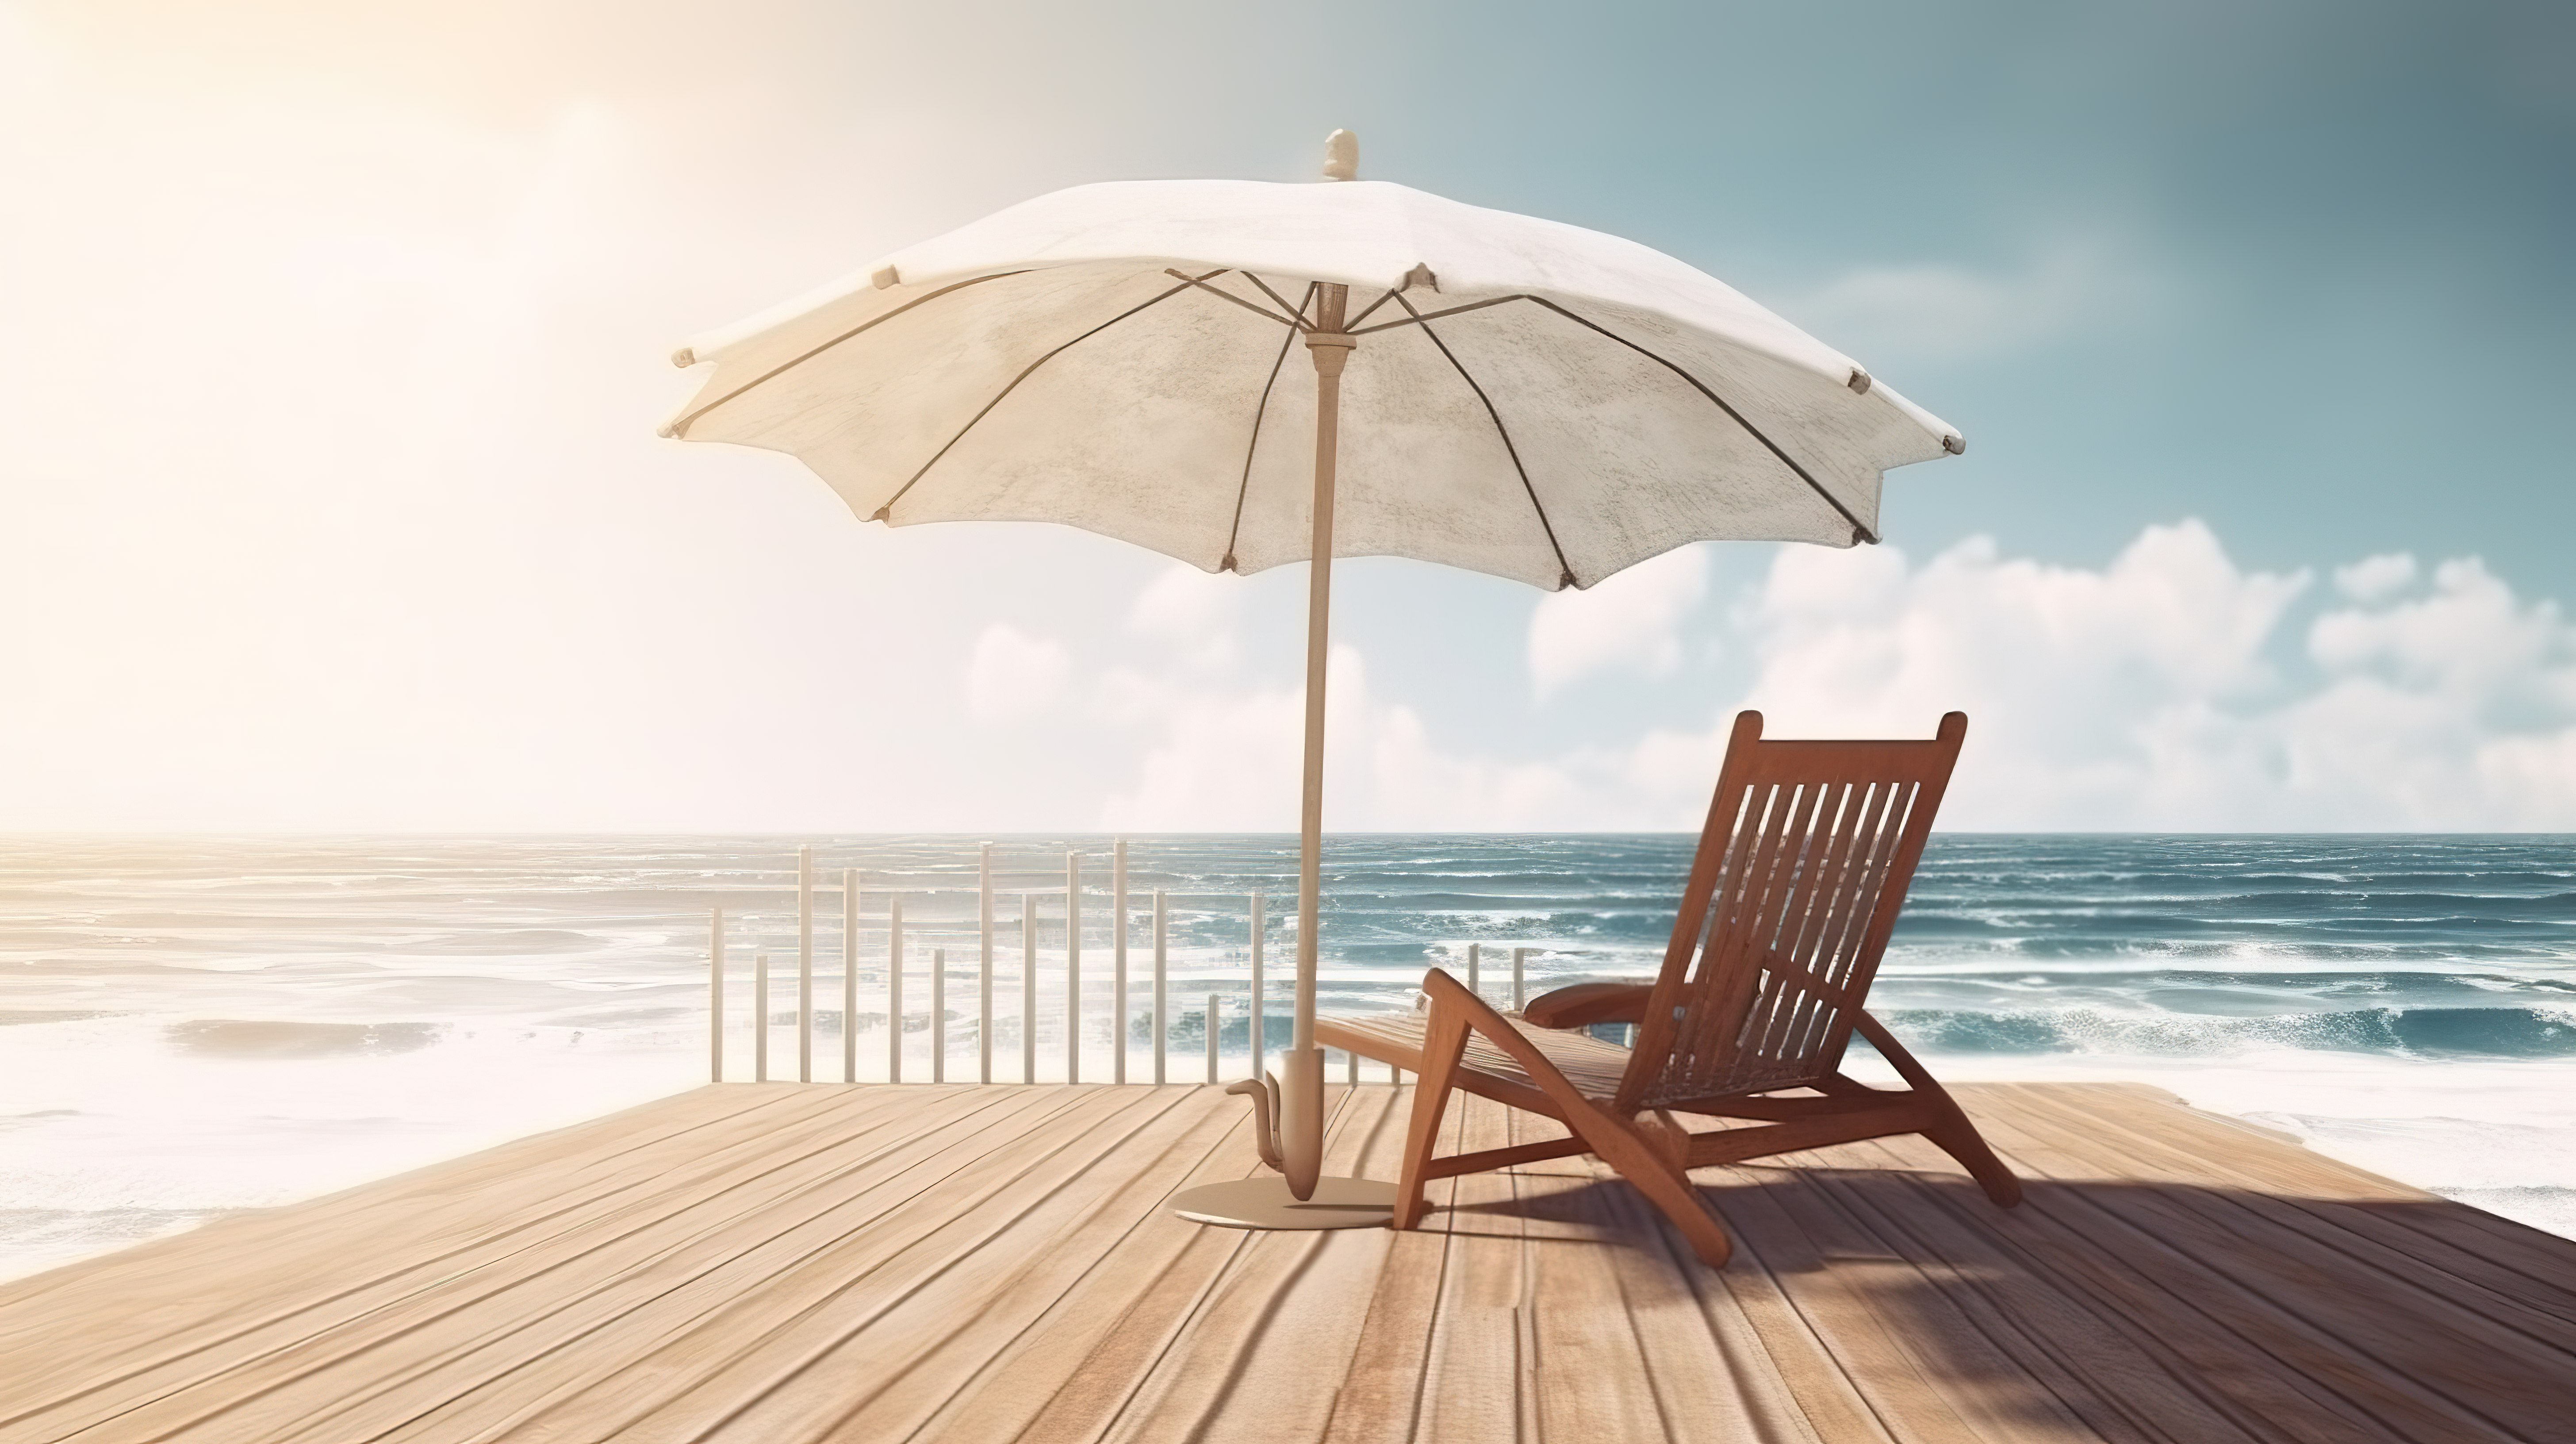 夏季海边木制露台上带雨伞的老式沙滩椅 3D 渲染图片